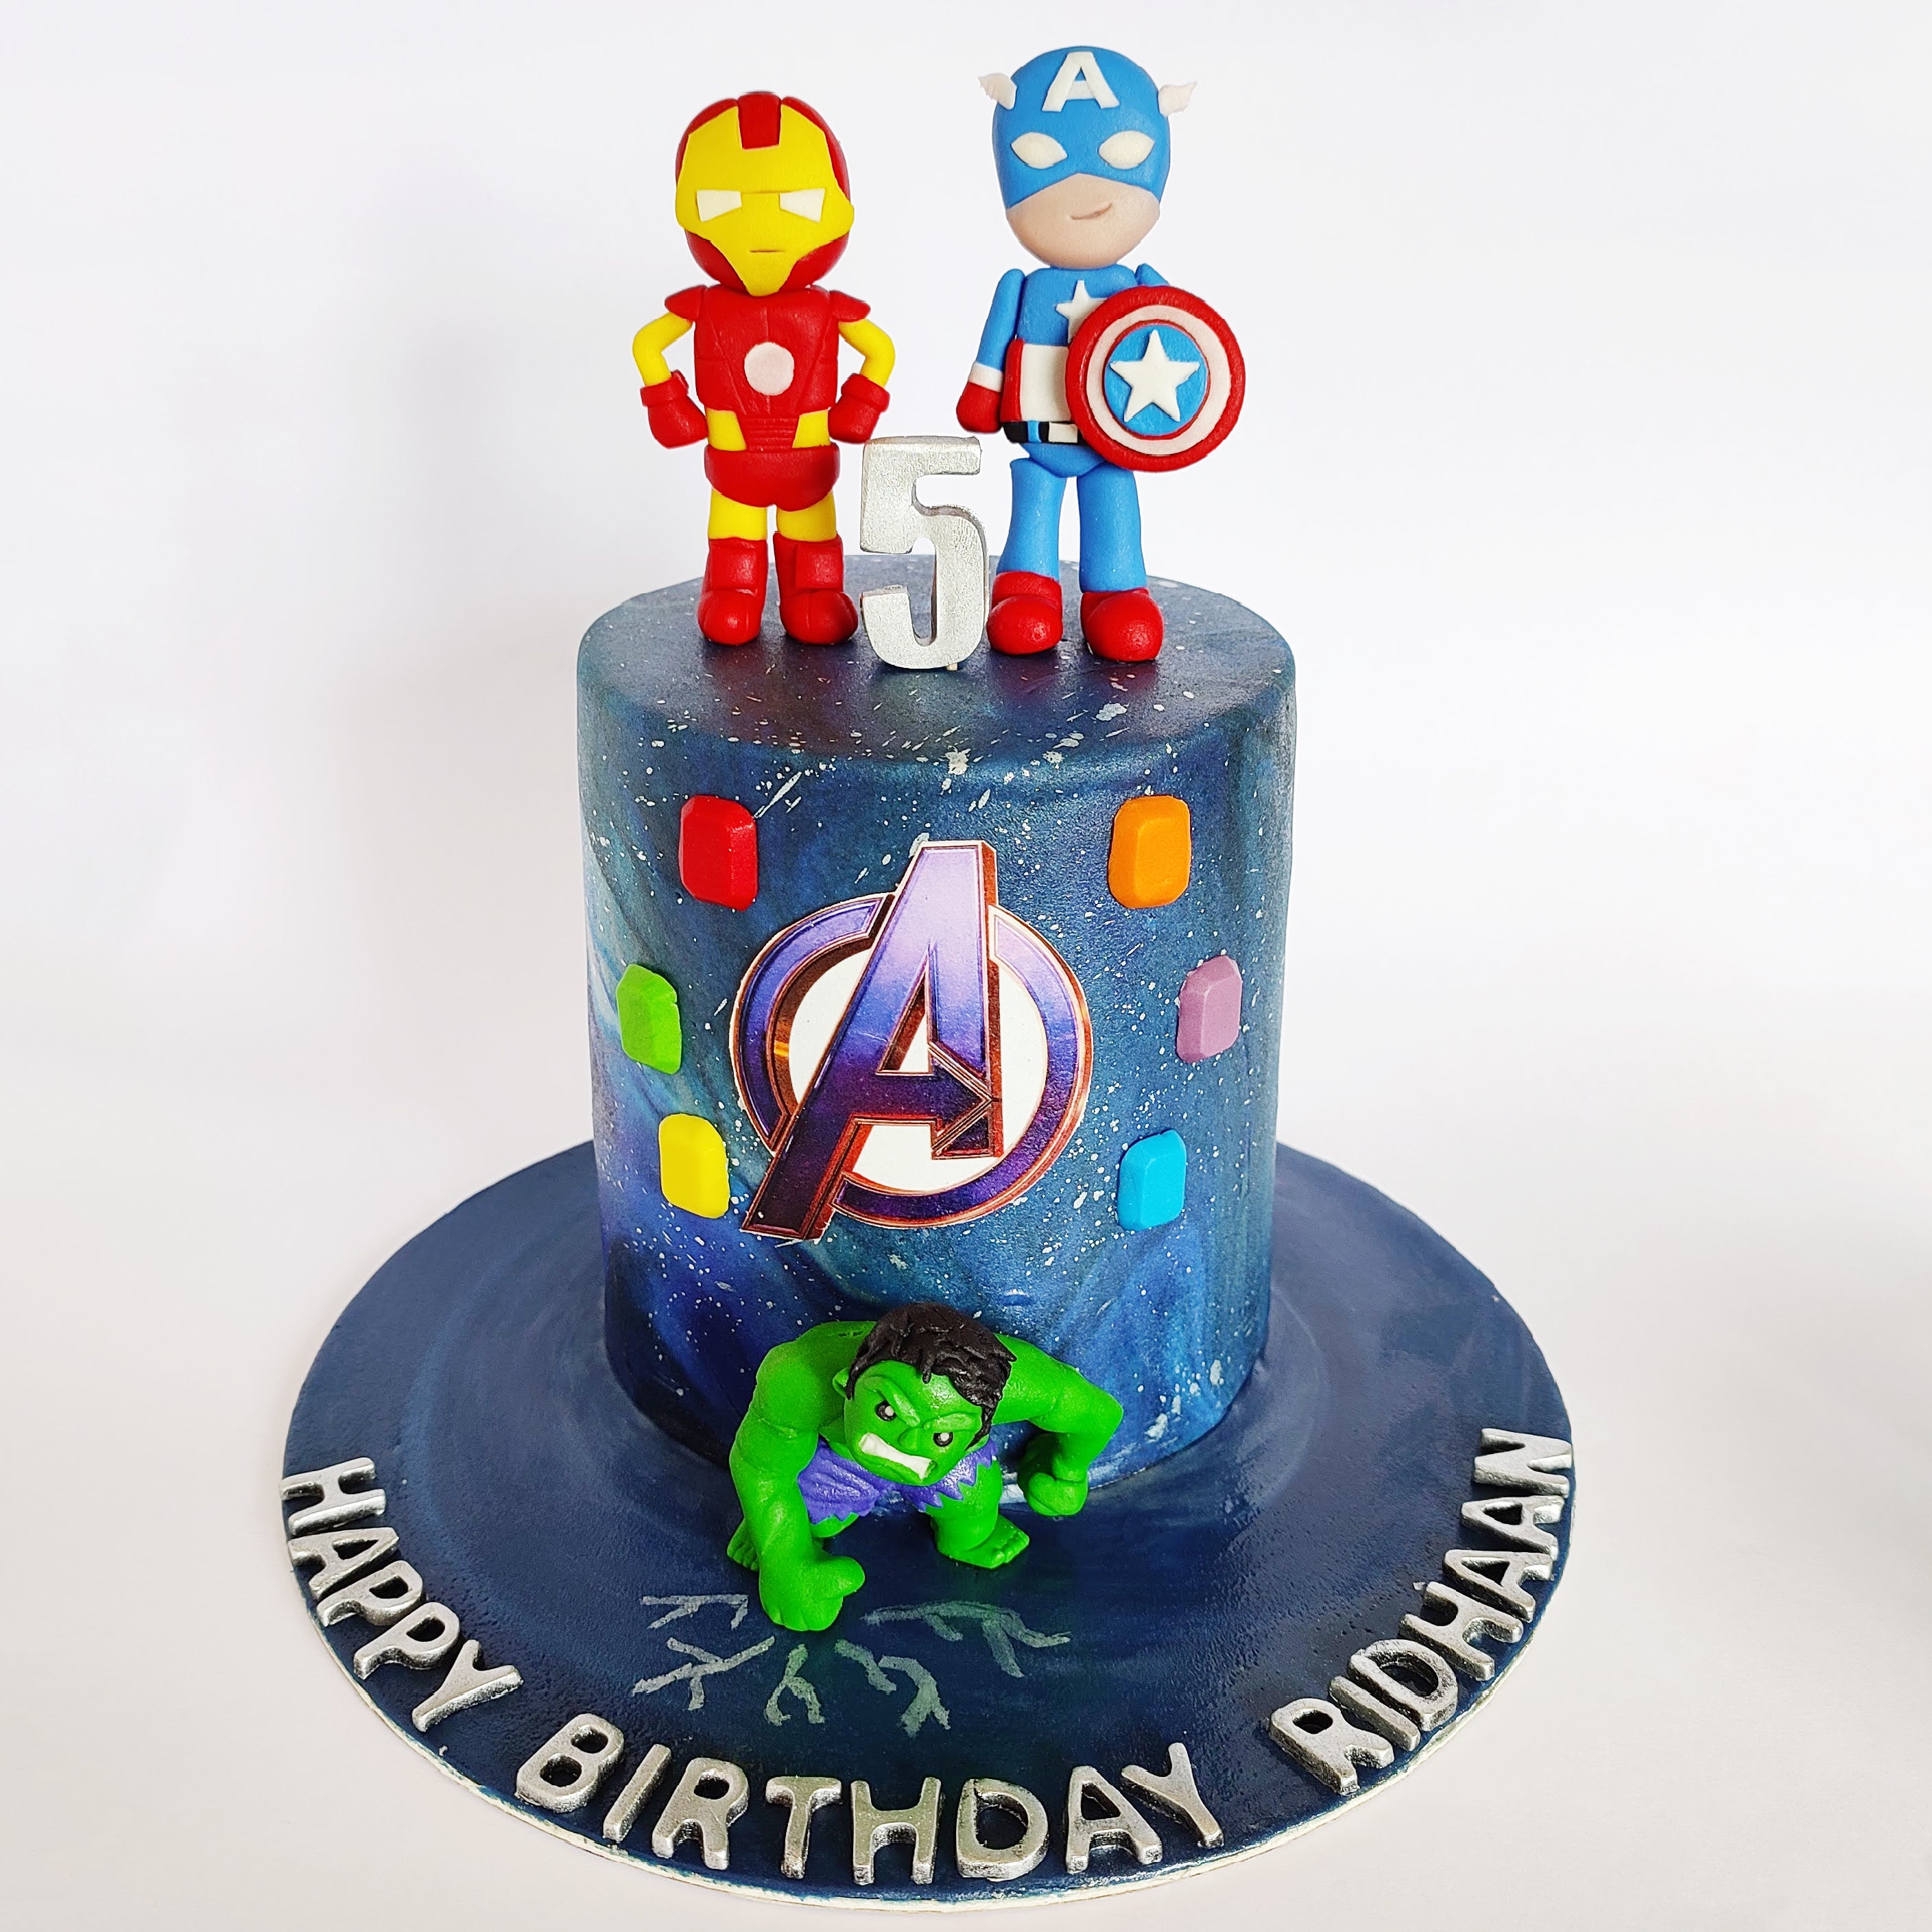 Avengers Cake  Decorated Cake by Dulcepastelcom  CakesDecor